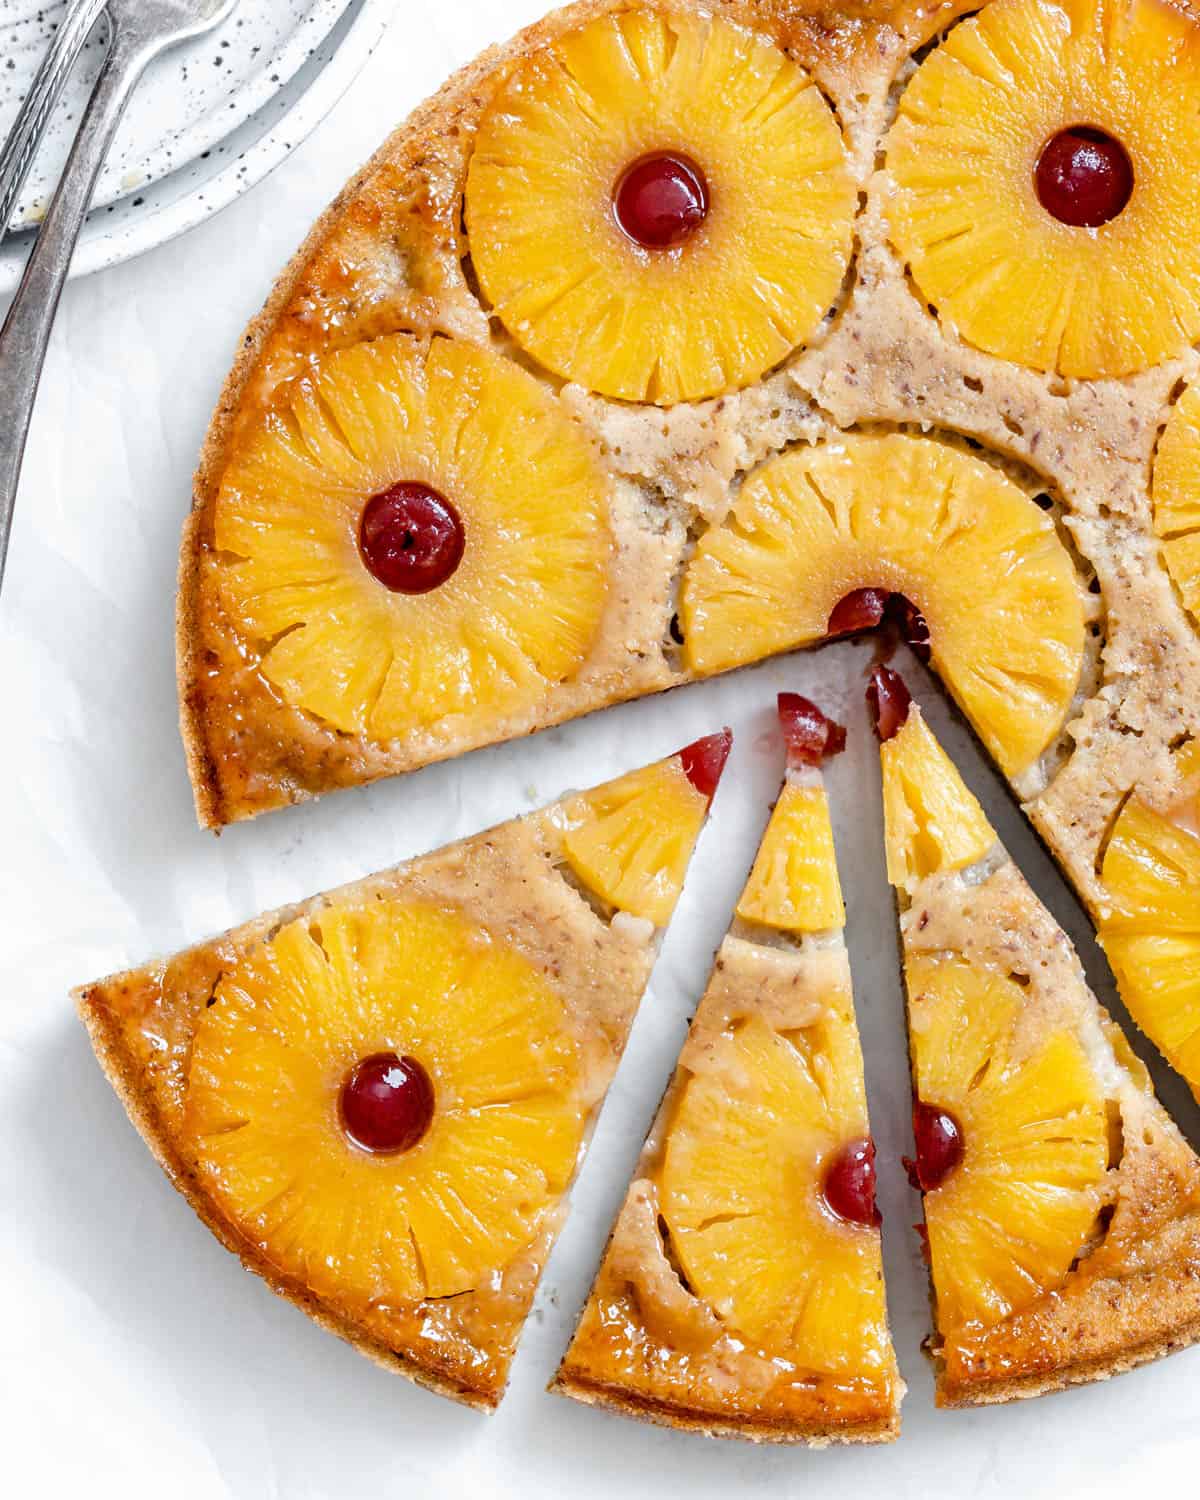 fertiger veganer Ananas-Upside-Down-Kuchen, geschnitten gegen eine helle Oberfläche